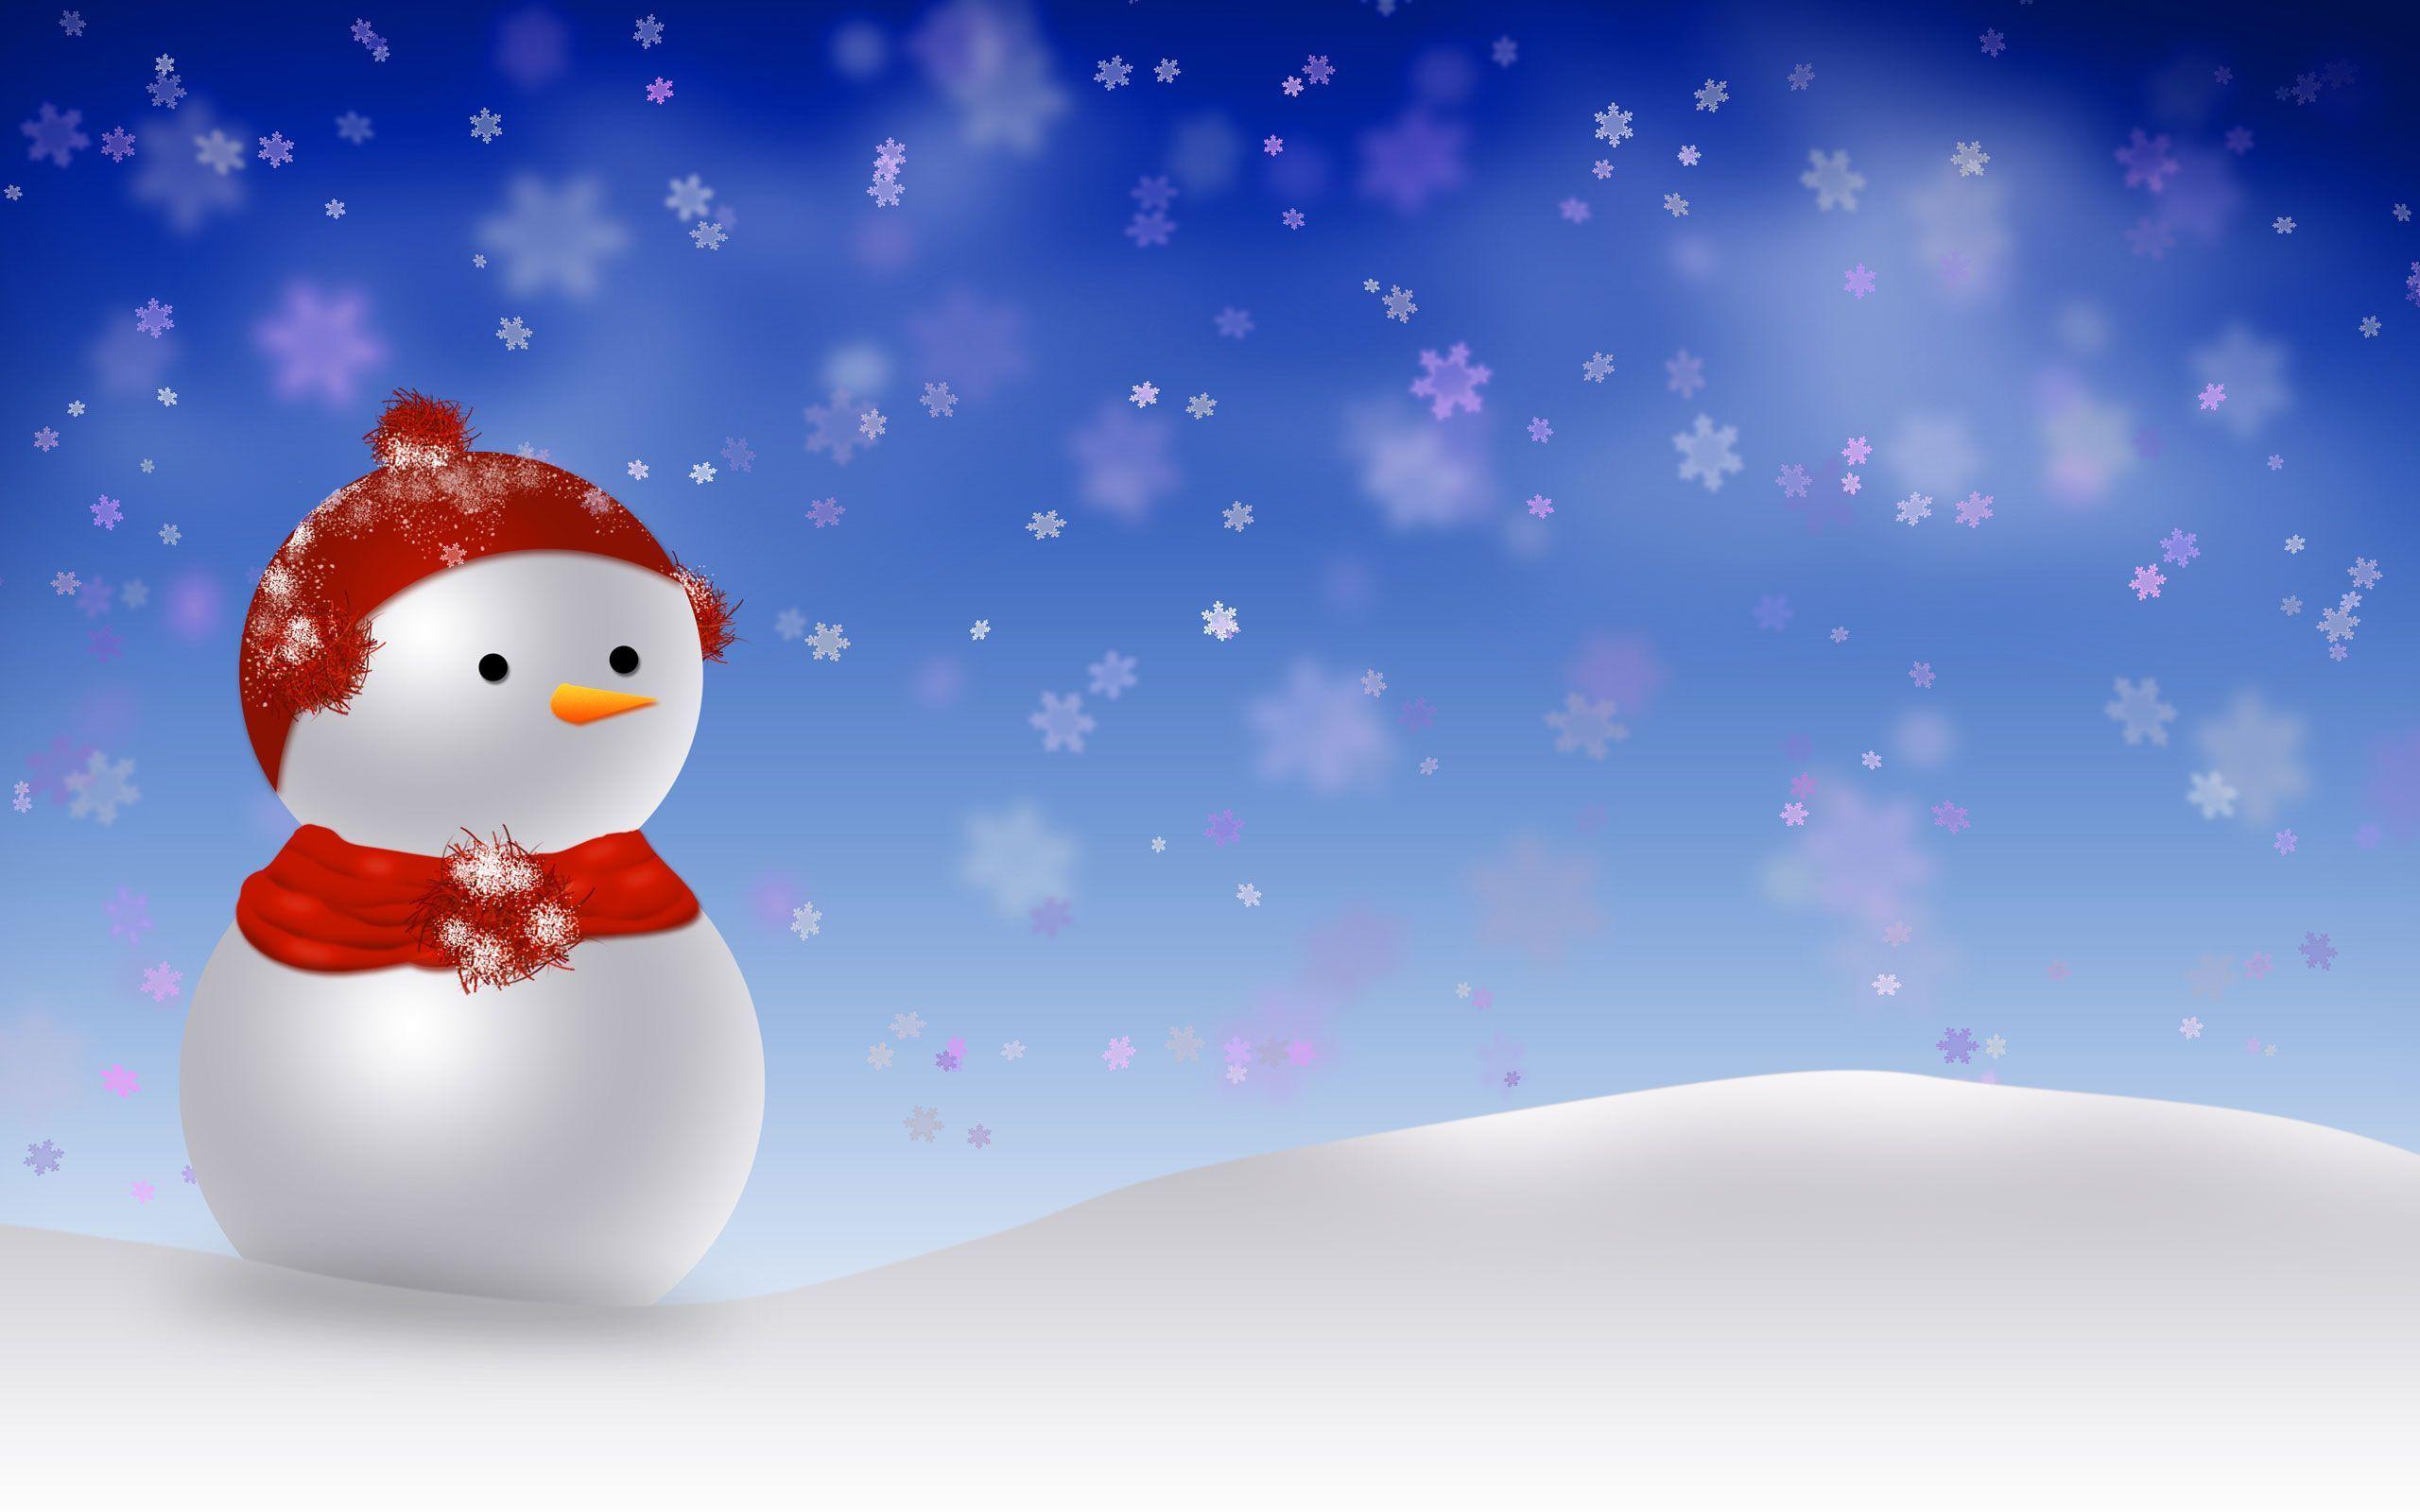 Cute Christmas Snowman Wallpaper Free Cute Christmas